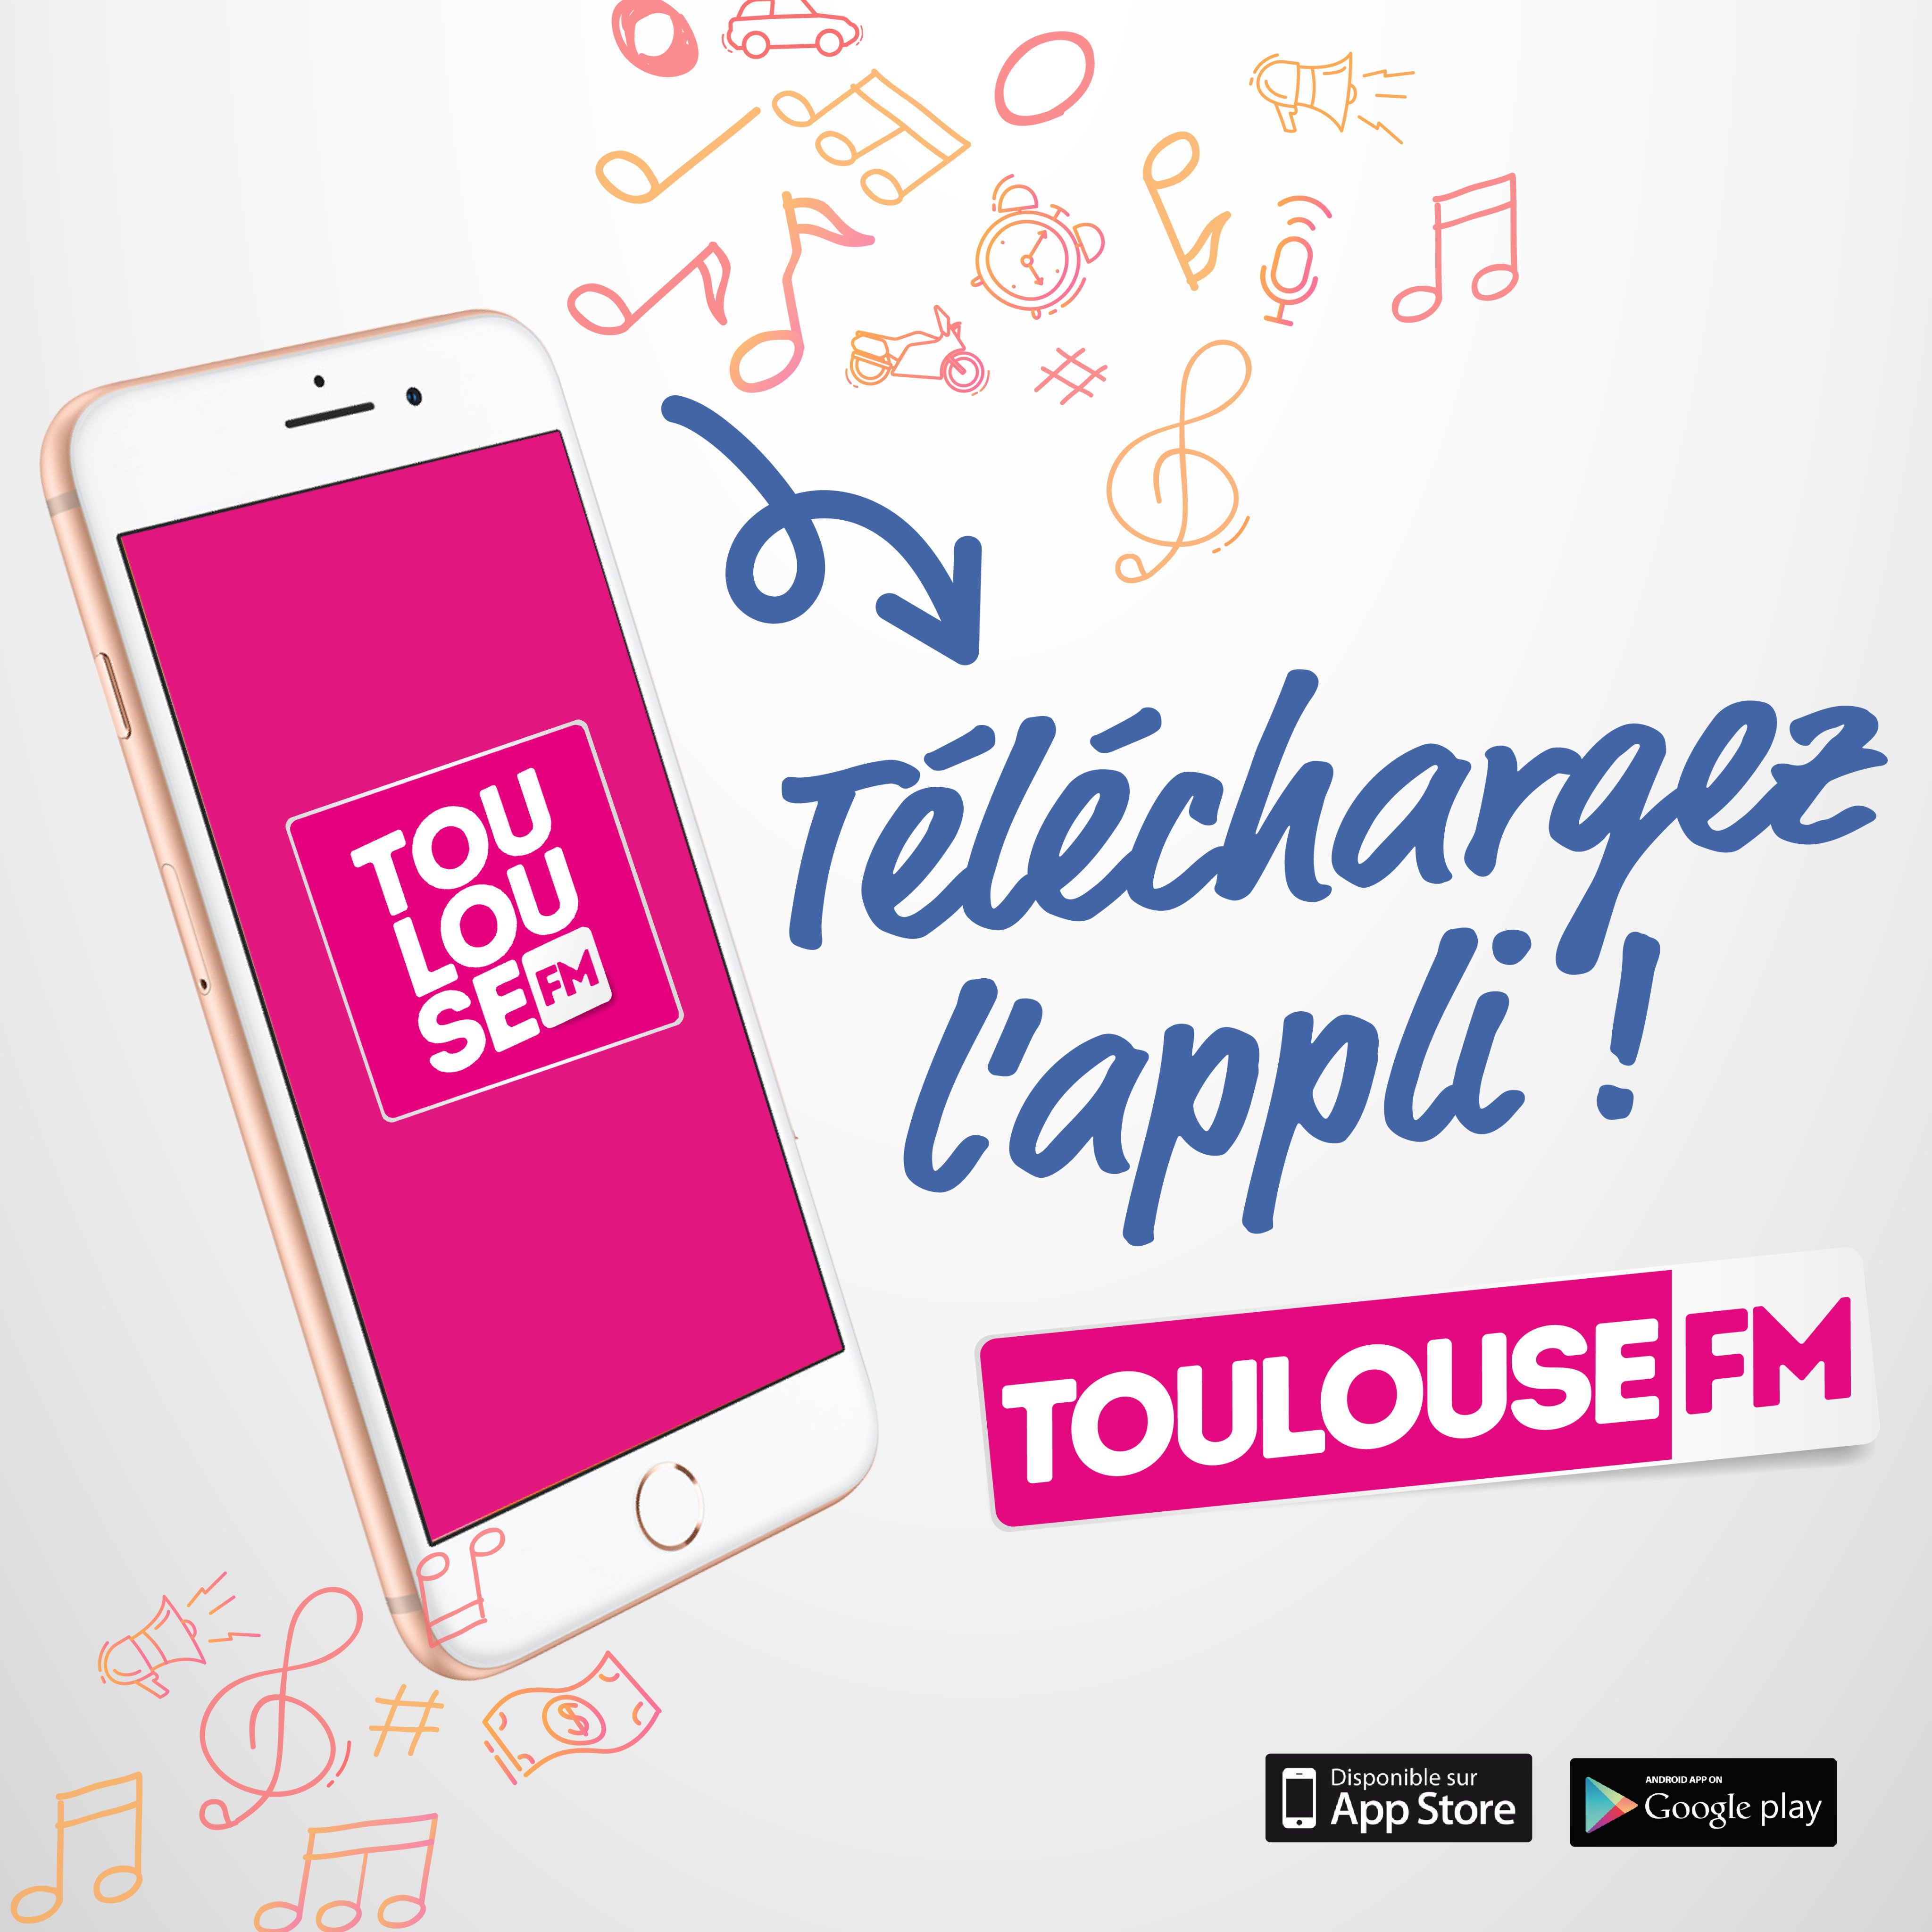 Toulouse FM (@ToulouseFM) / Twitter